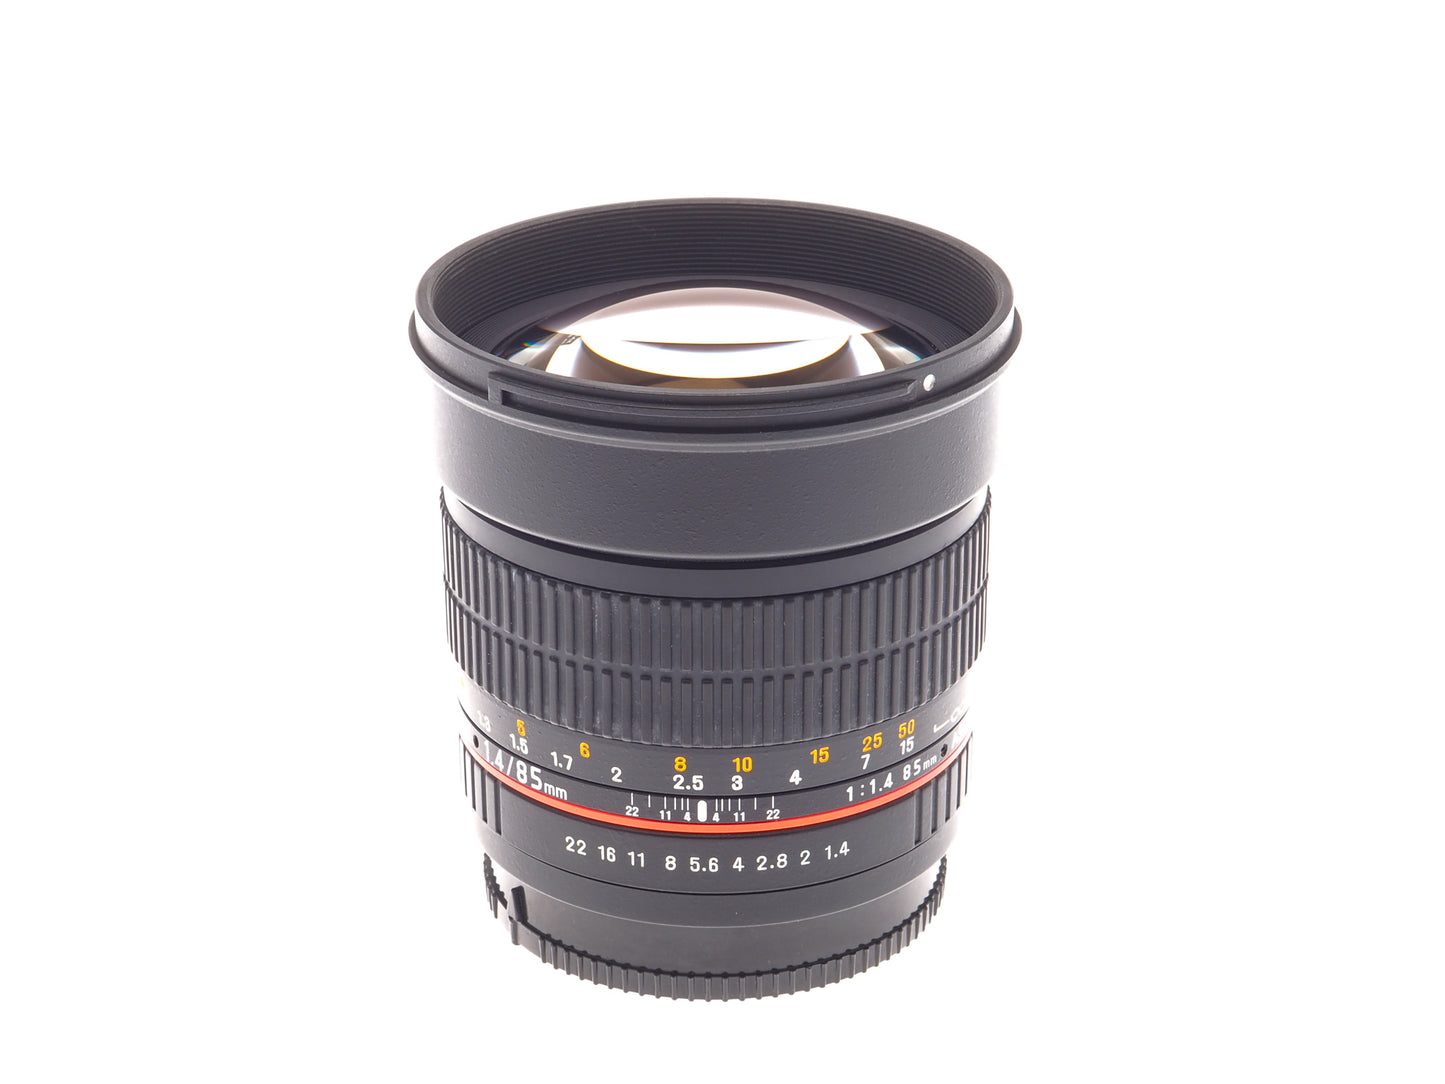 Samyang 85mm f1.4 AS IF UMC - Lens